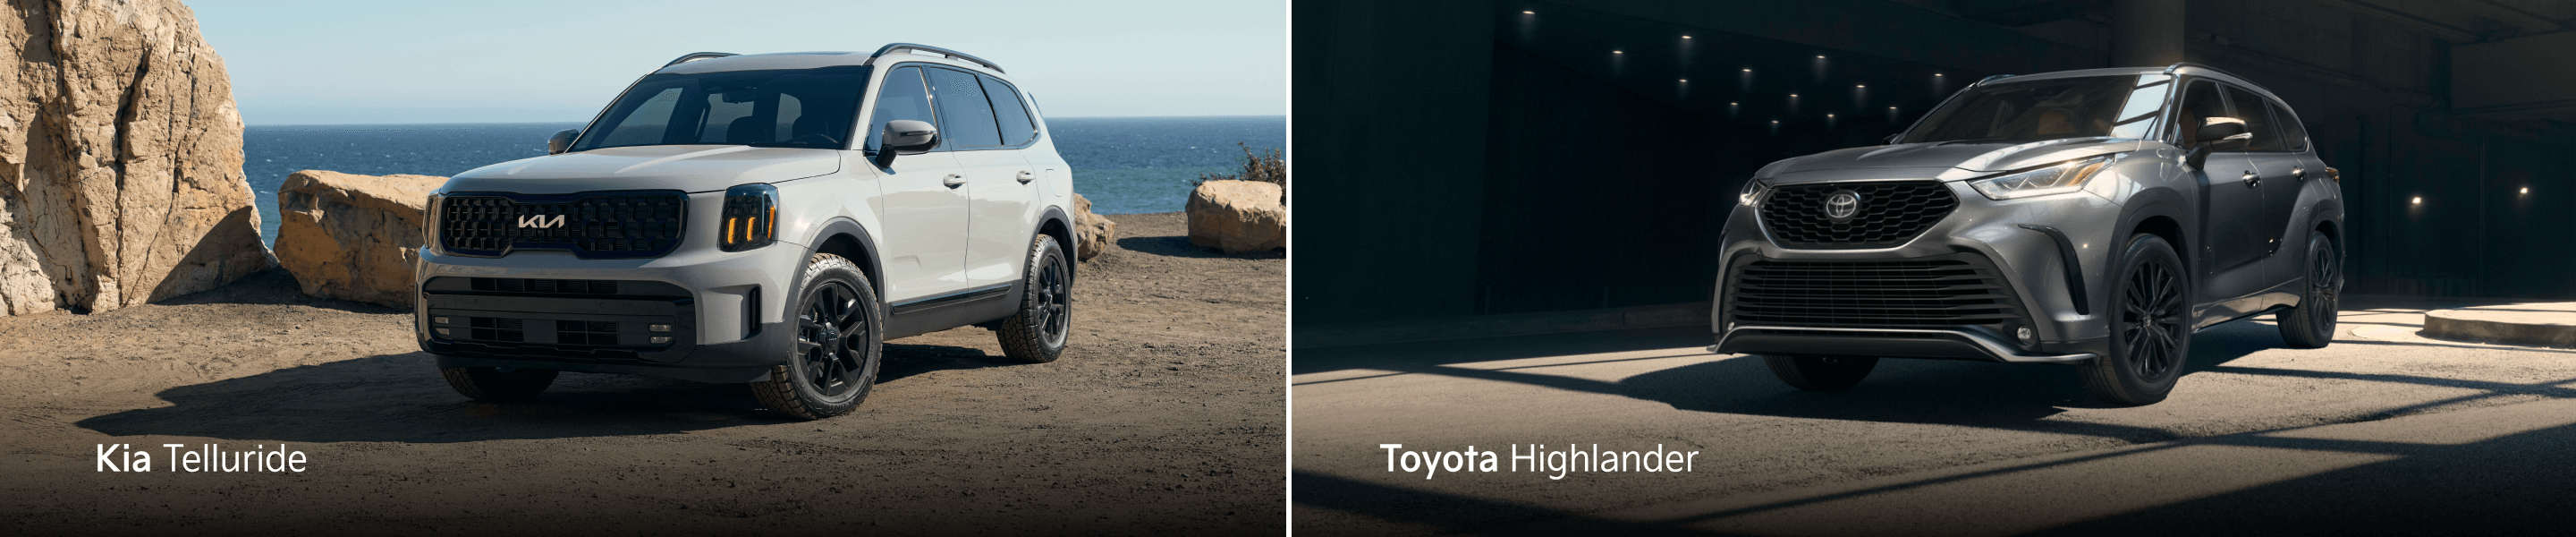 Kia Telluride vs. Toyota Highlander Comparison